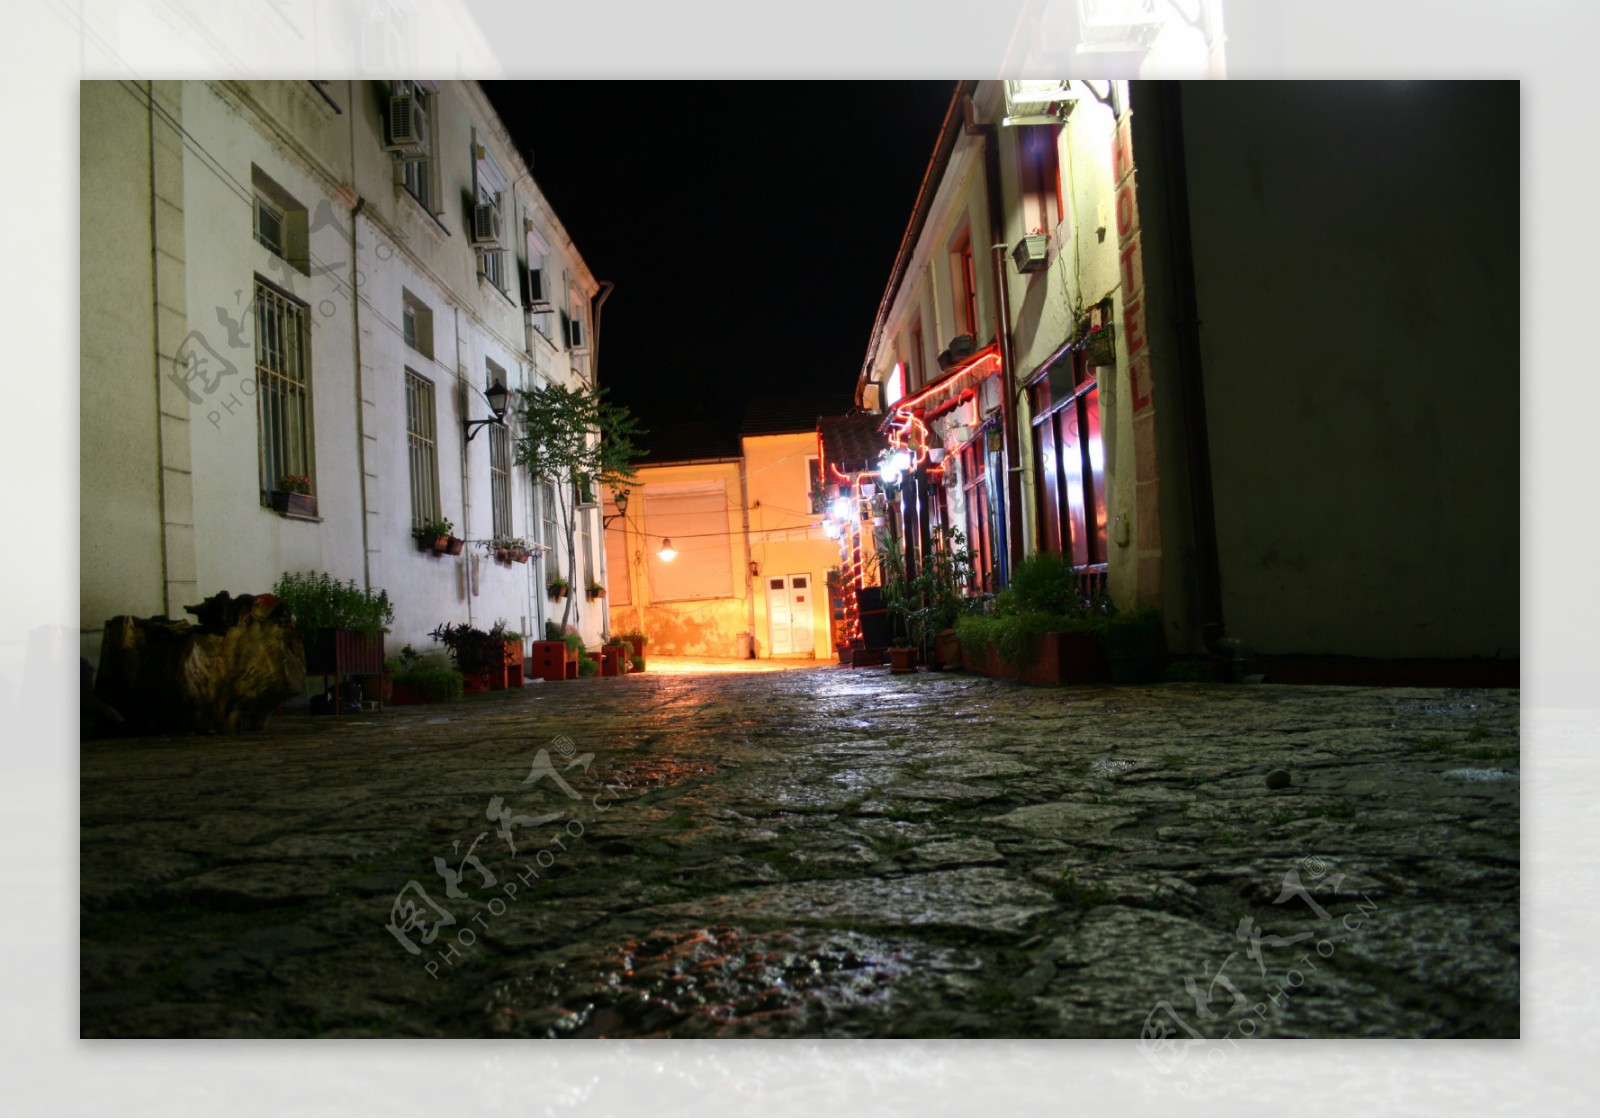 古老的街道在夜间